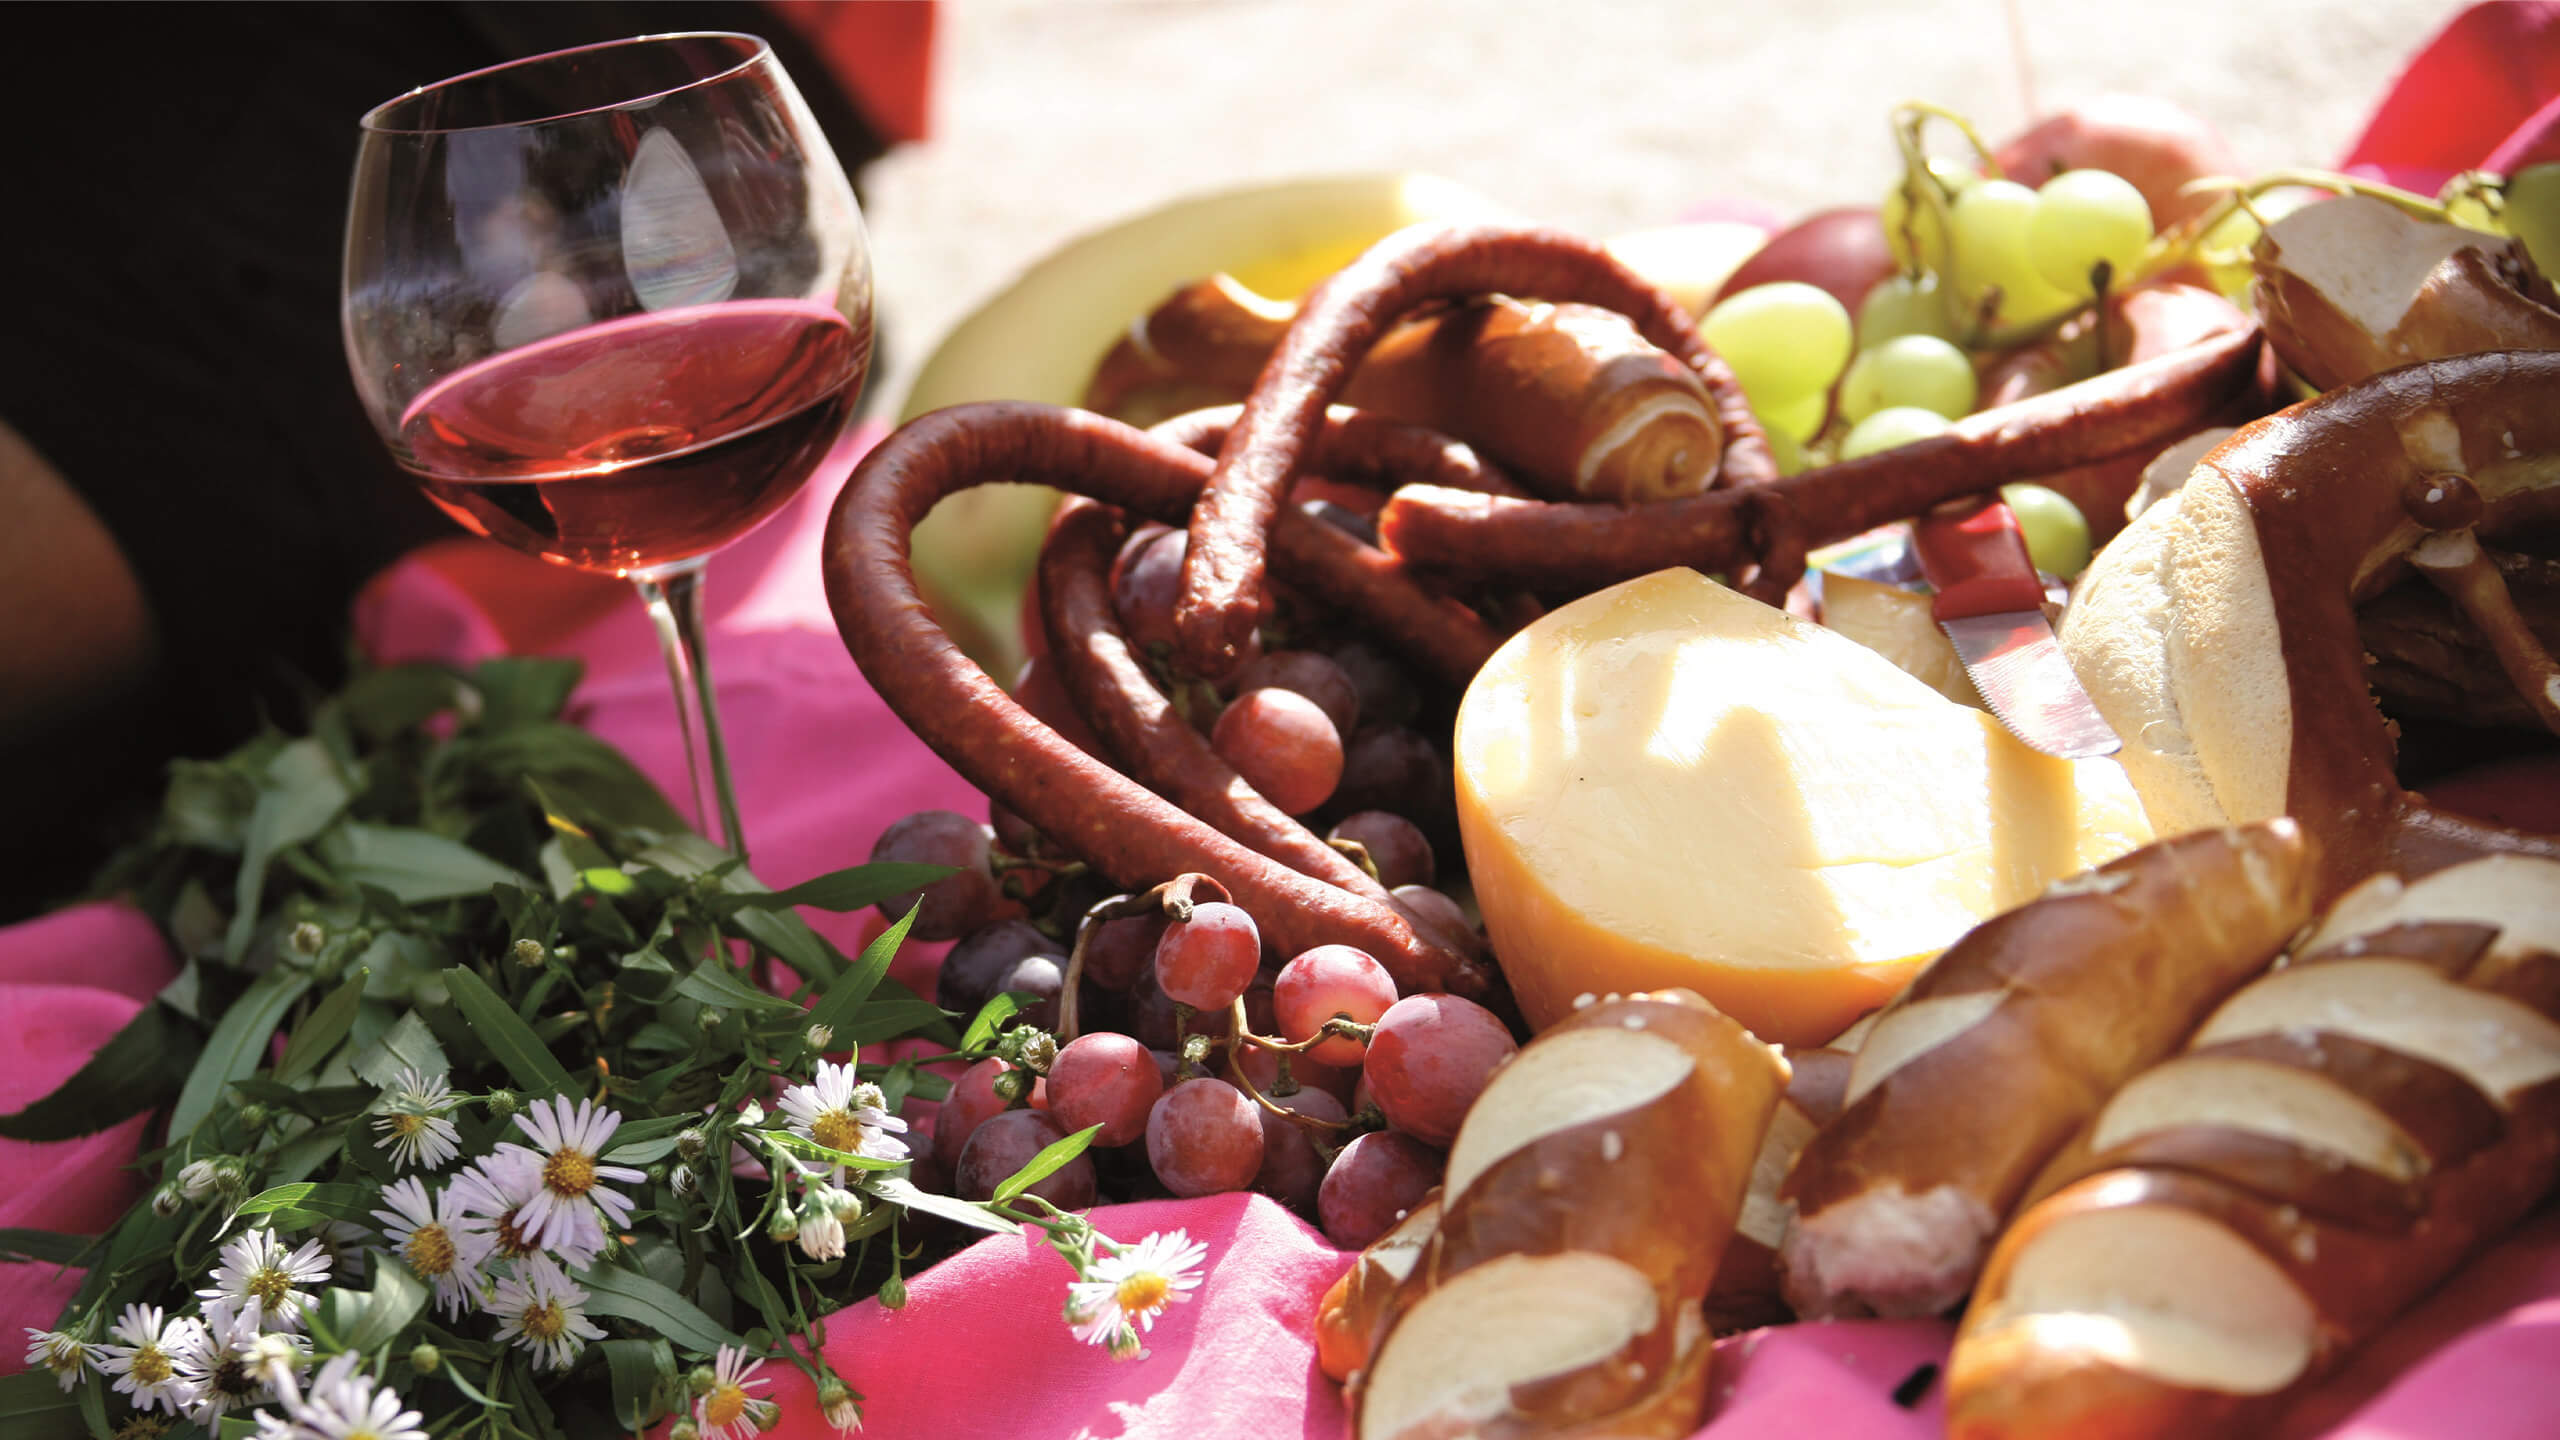 Typisches Vesper mit einem Glas Rotwein, Laugenstangen, Käse, Wurst und Weintrauben auf einer rosafarbenen Decke und Blumen als Dekoration